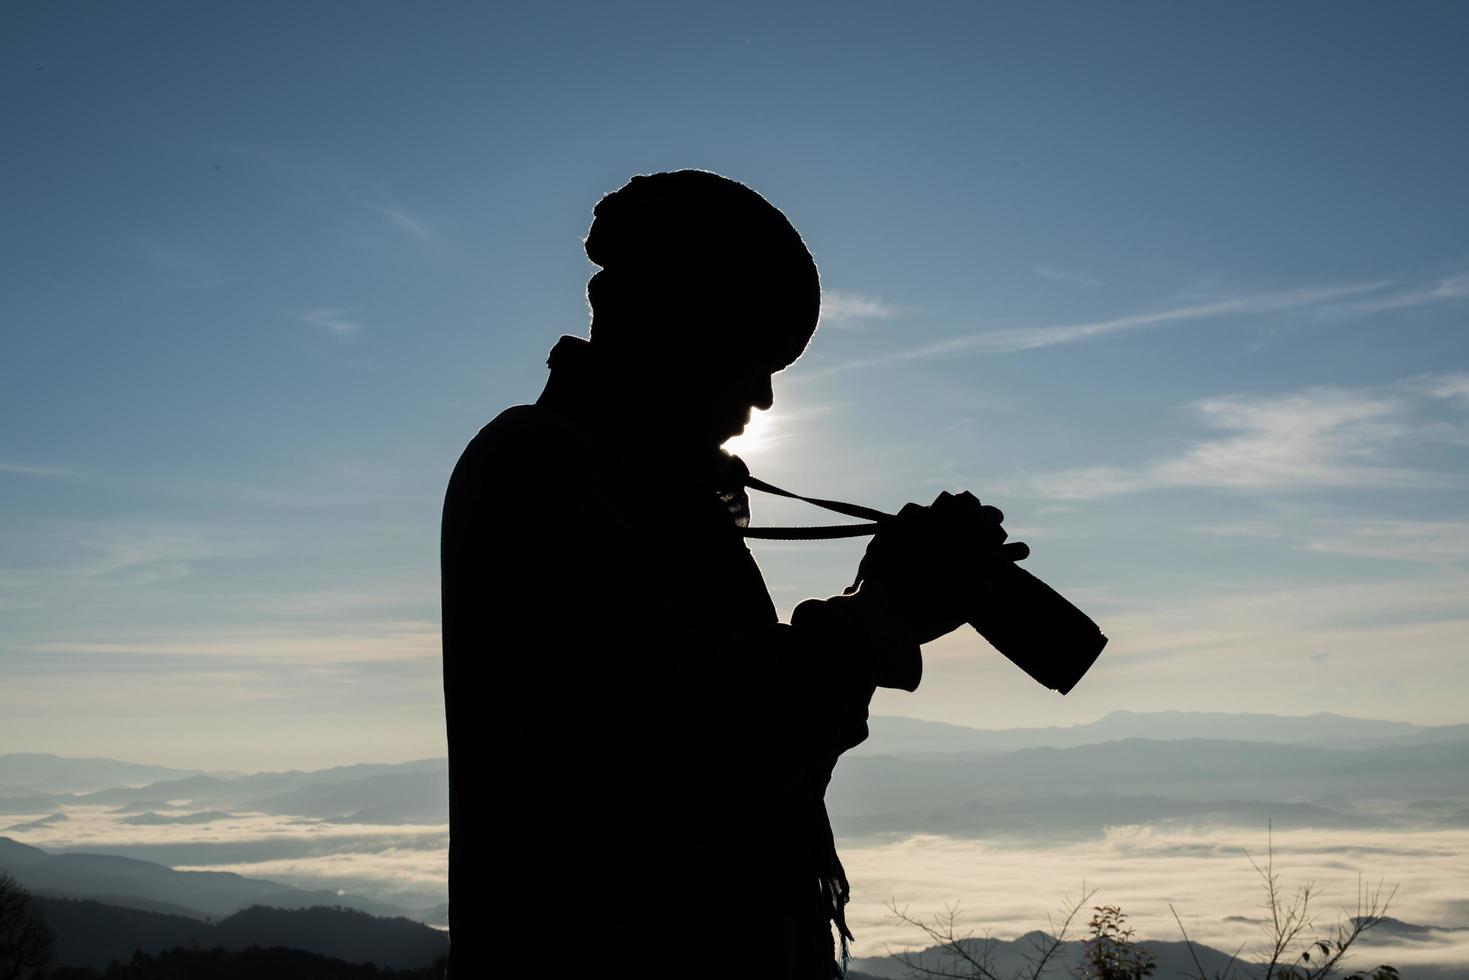 Schattenbild des jungen Fotografen, der eine Kamera mit Berglandschaft hält foto